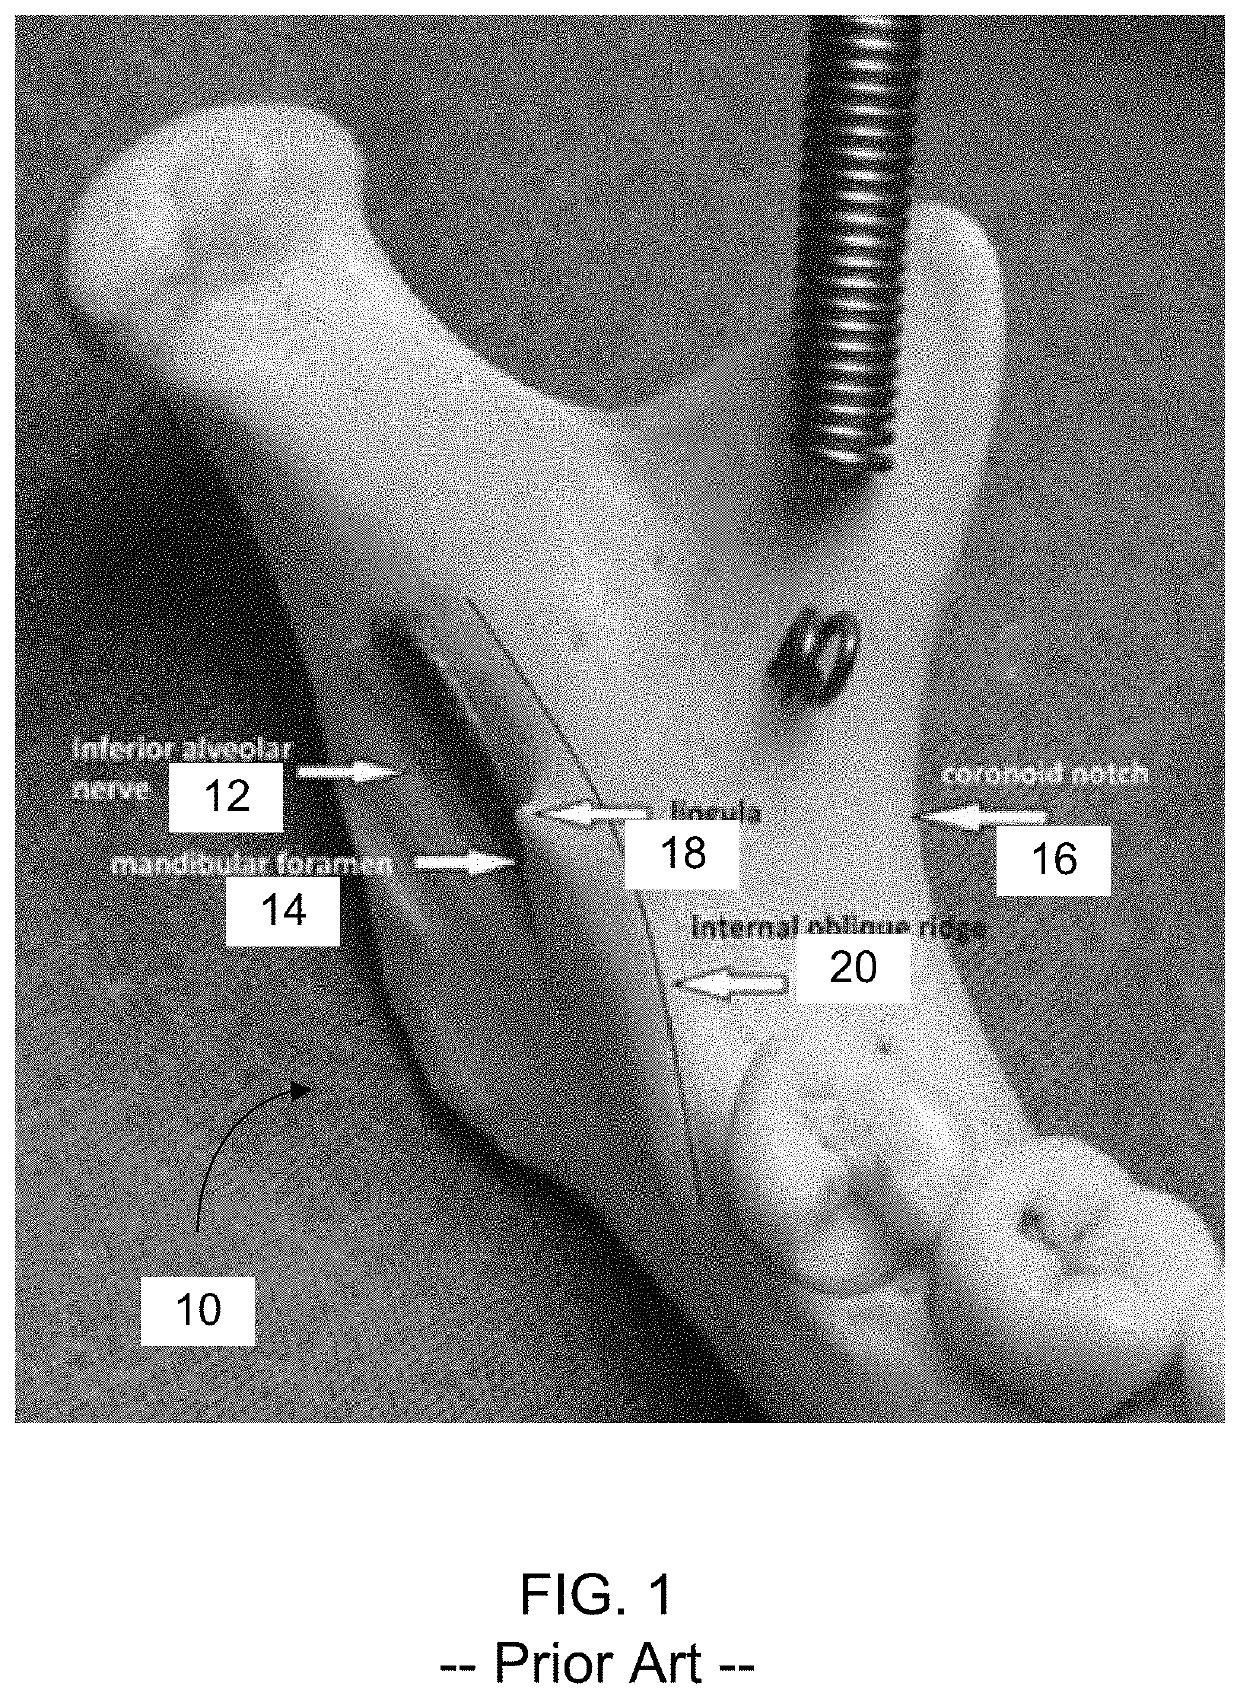 Mandibular Anesthesia Curved Dental Needle